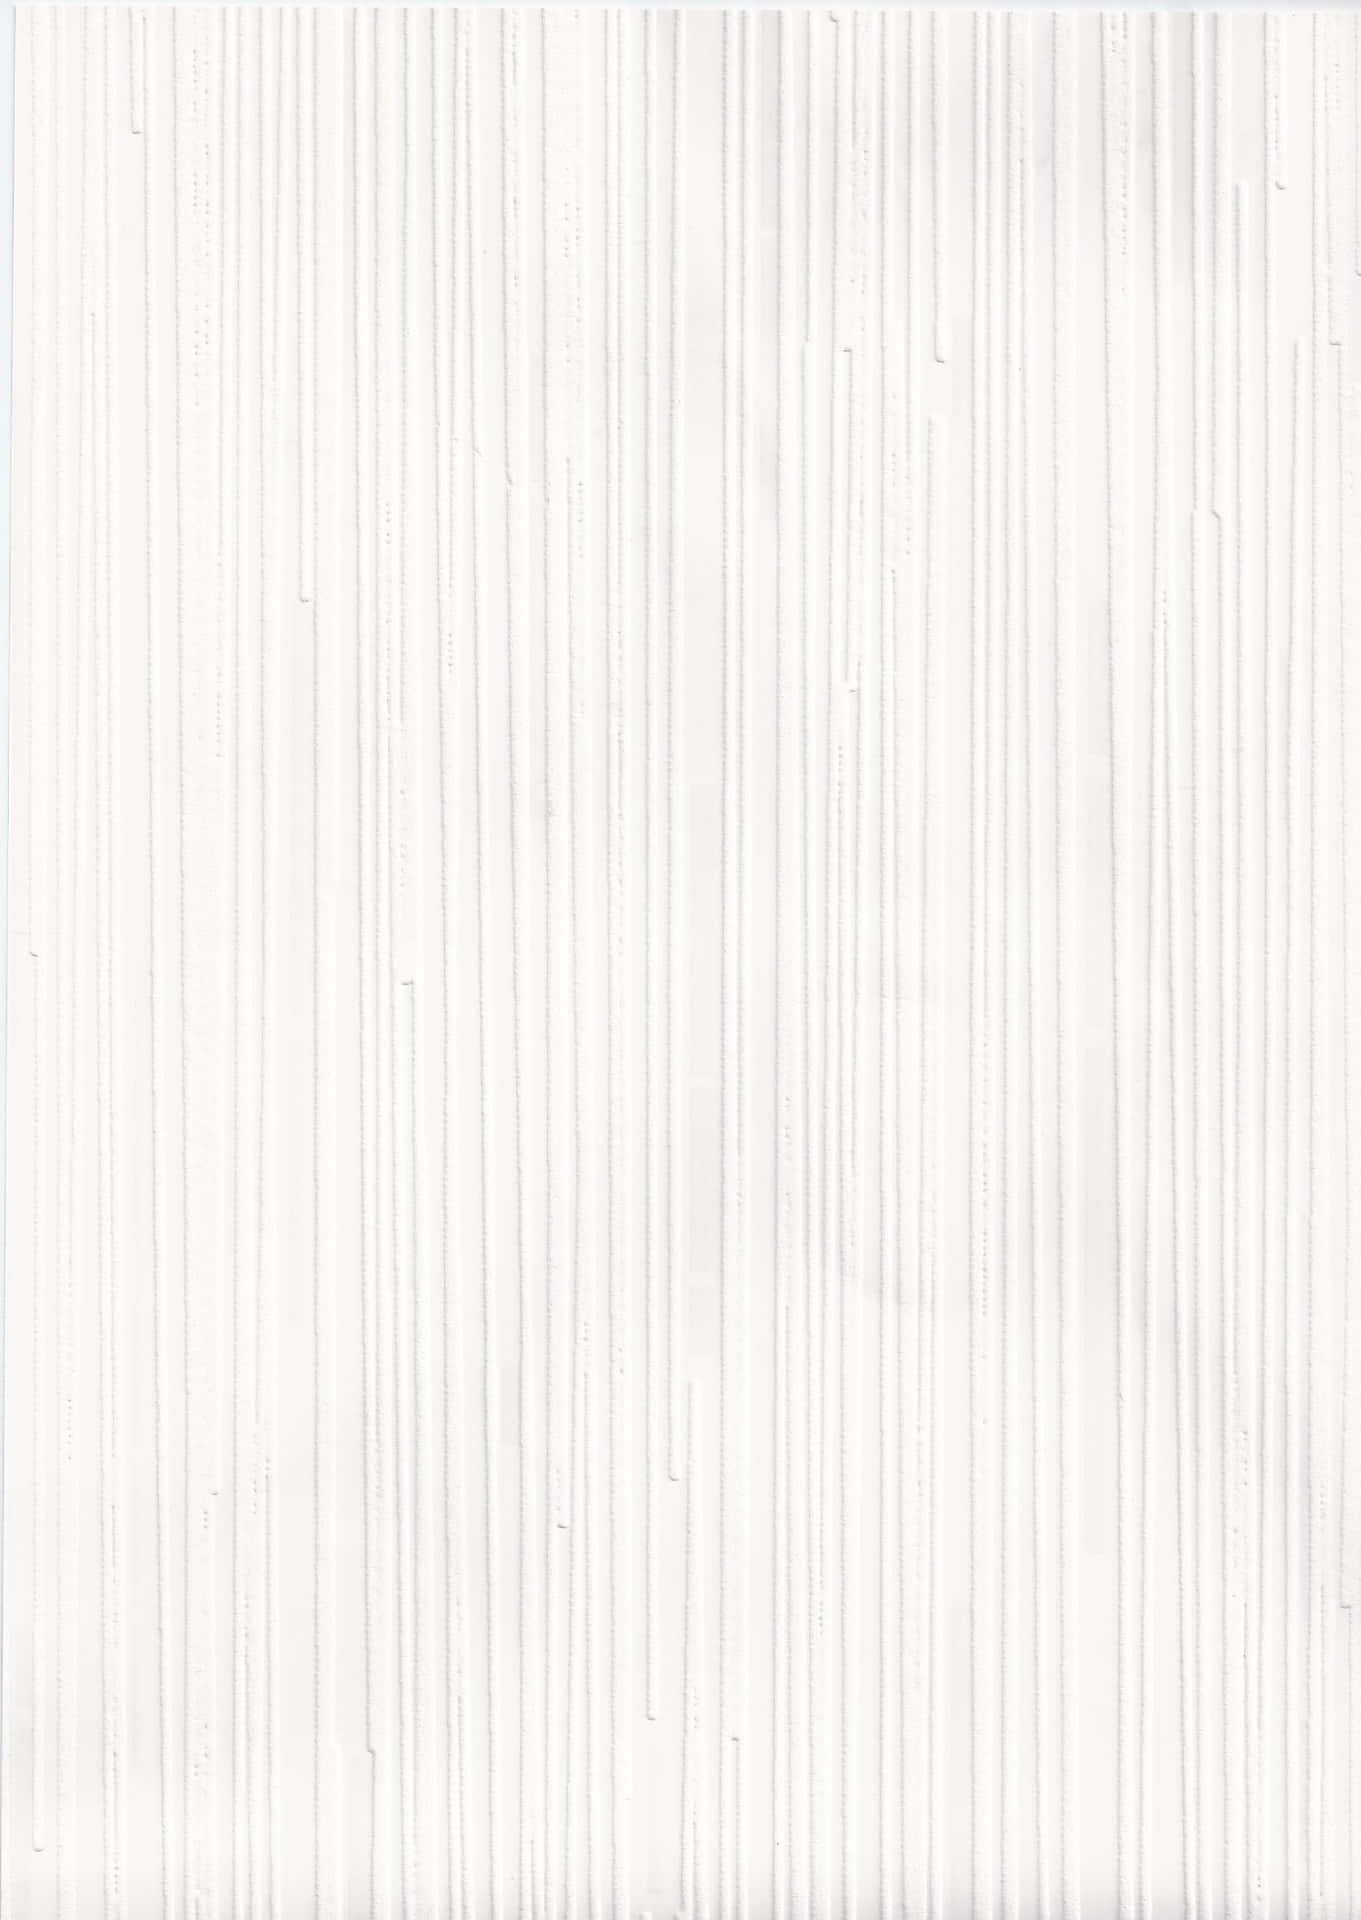 Estefondo Blanco Sólido Minimalista Es Perfecto Para Casi Cualquier Aplicación.